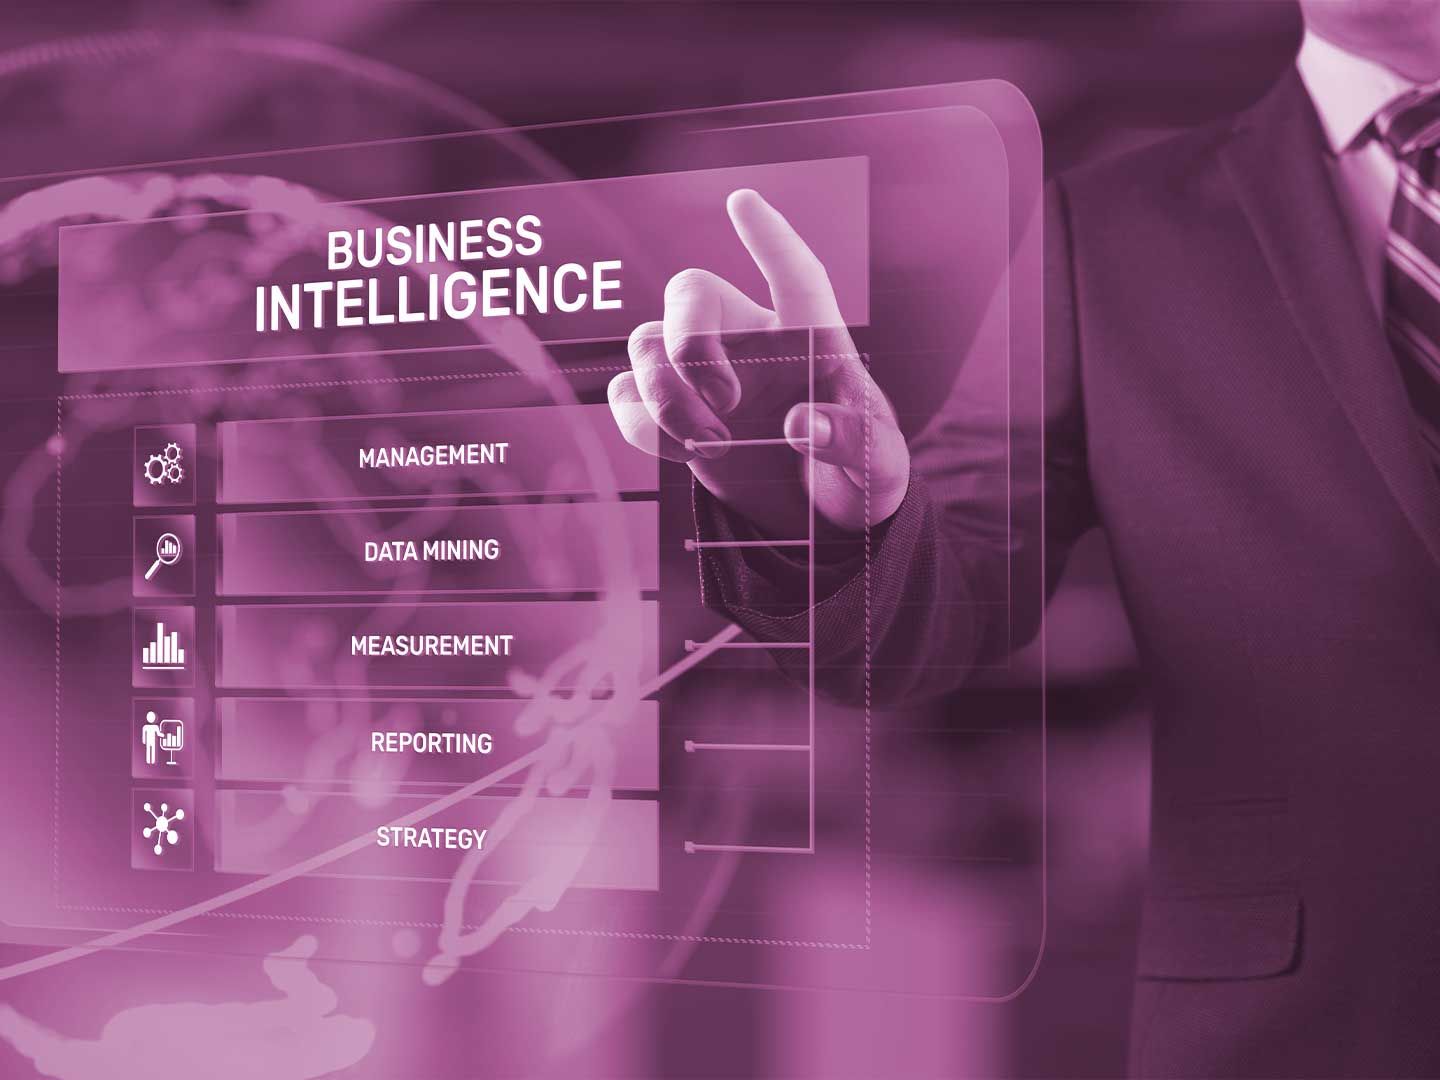 IT-Miarbeiter recherchiert, wie Business Intelligence das Unternehmen erfolgreicher macht.